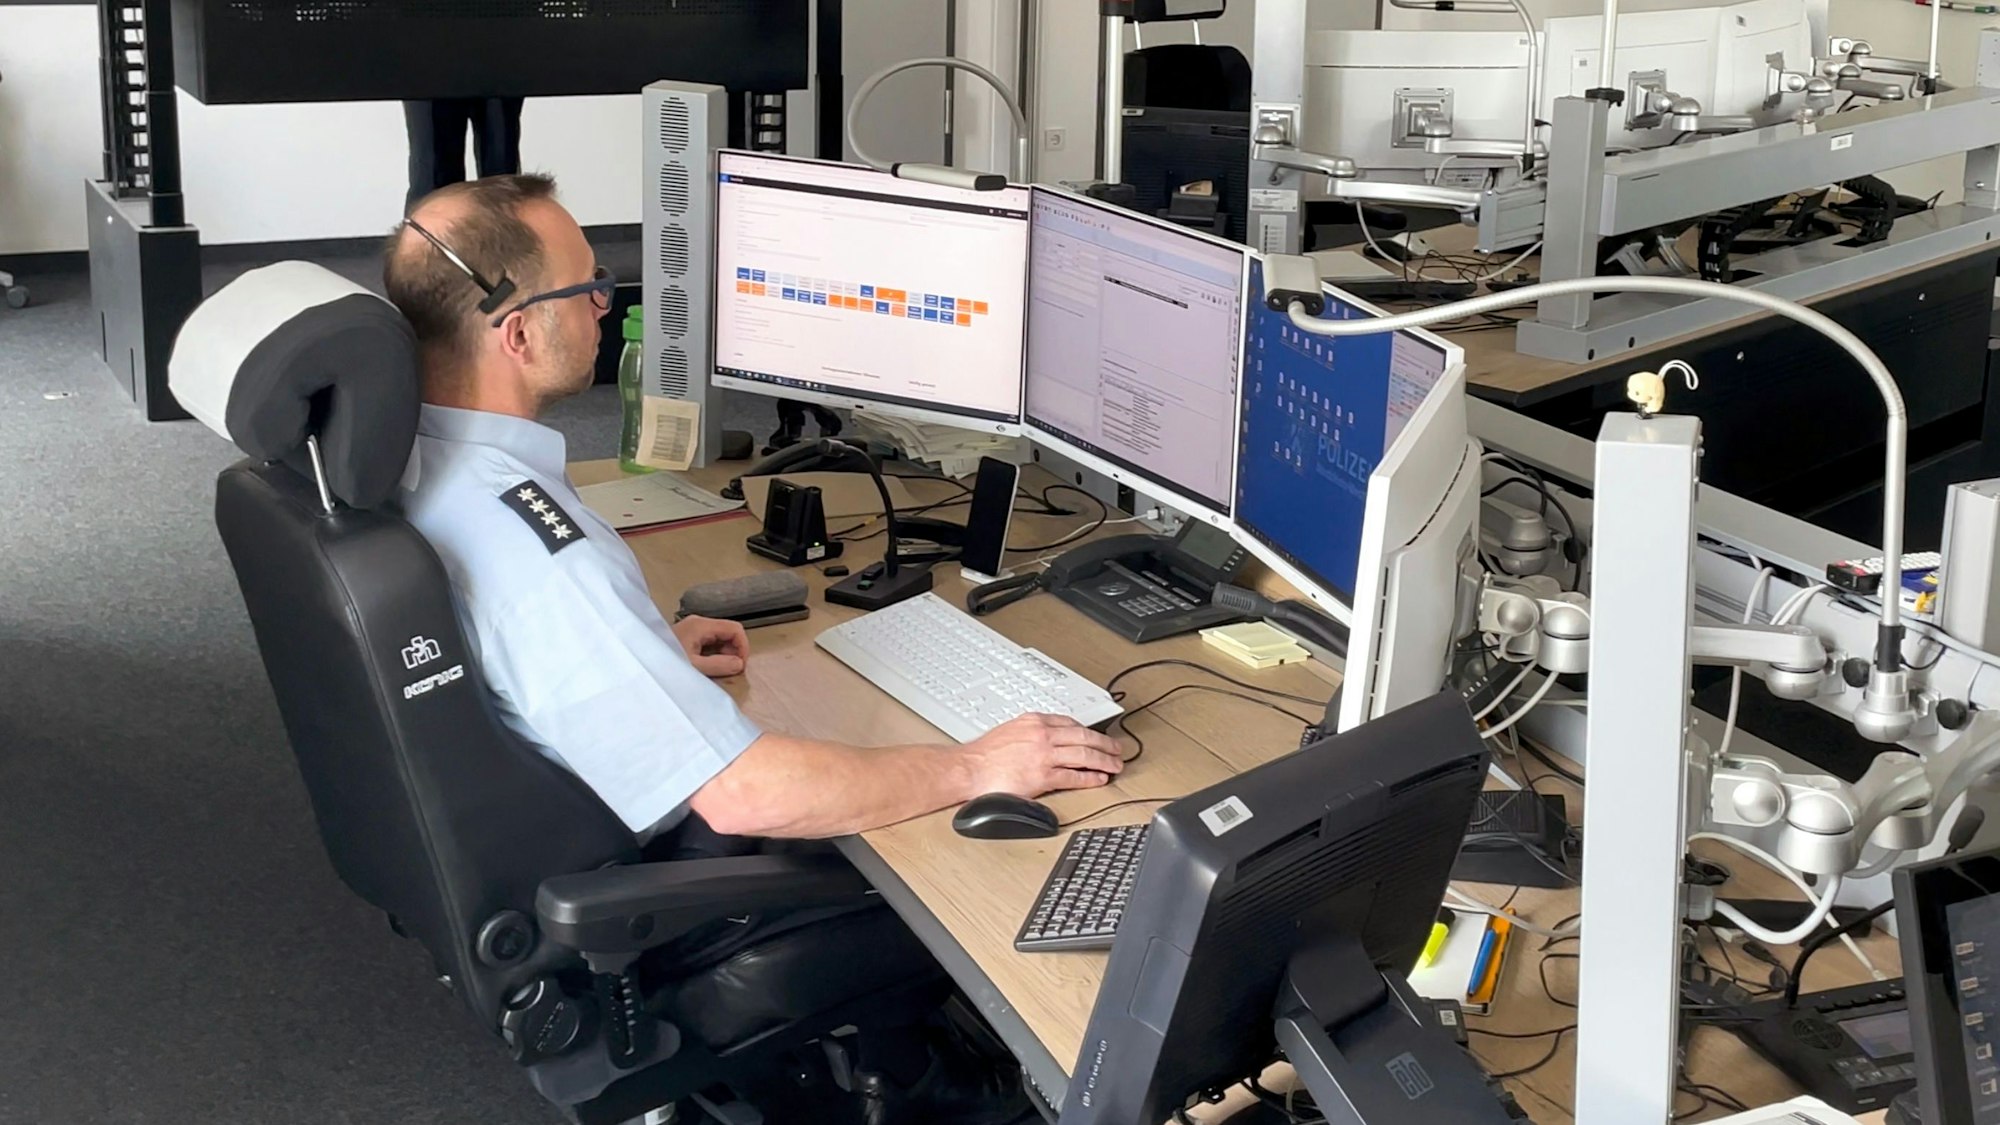 Ein Polizist in Uniform sitzt an einem Computerarbeitsplatz vor vier Bildschirmen.